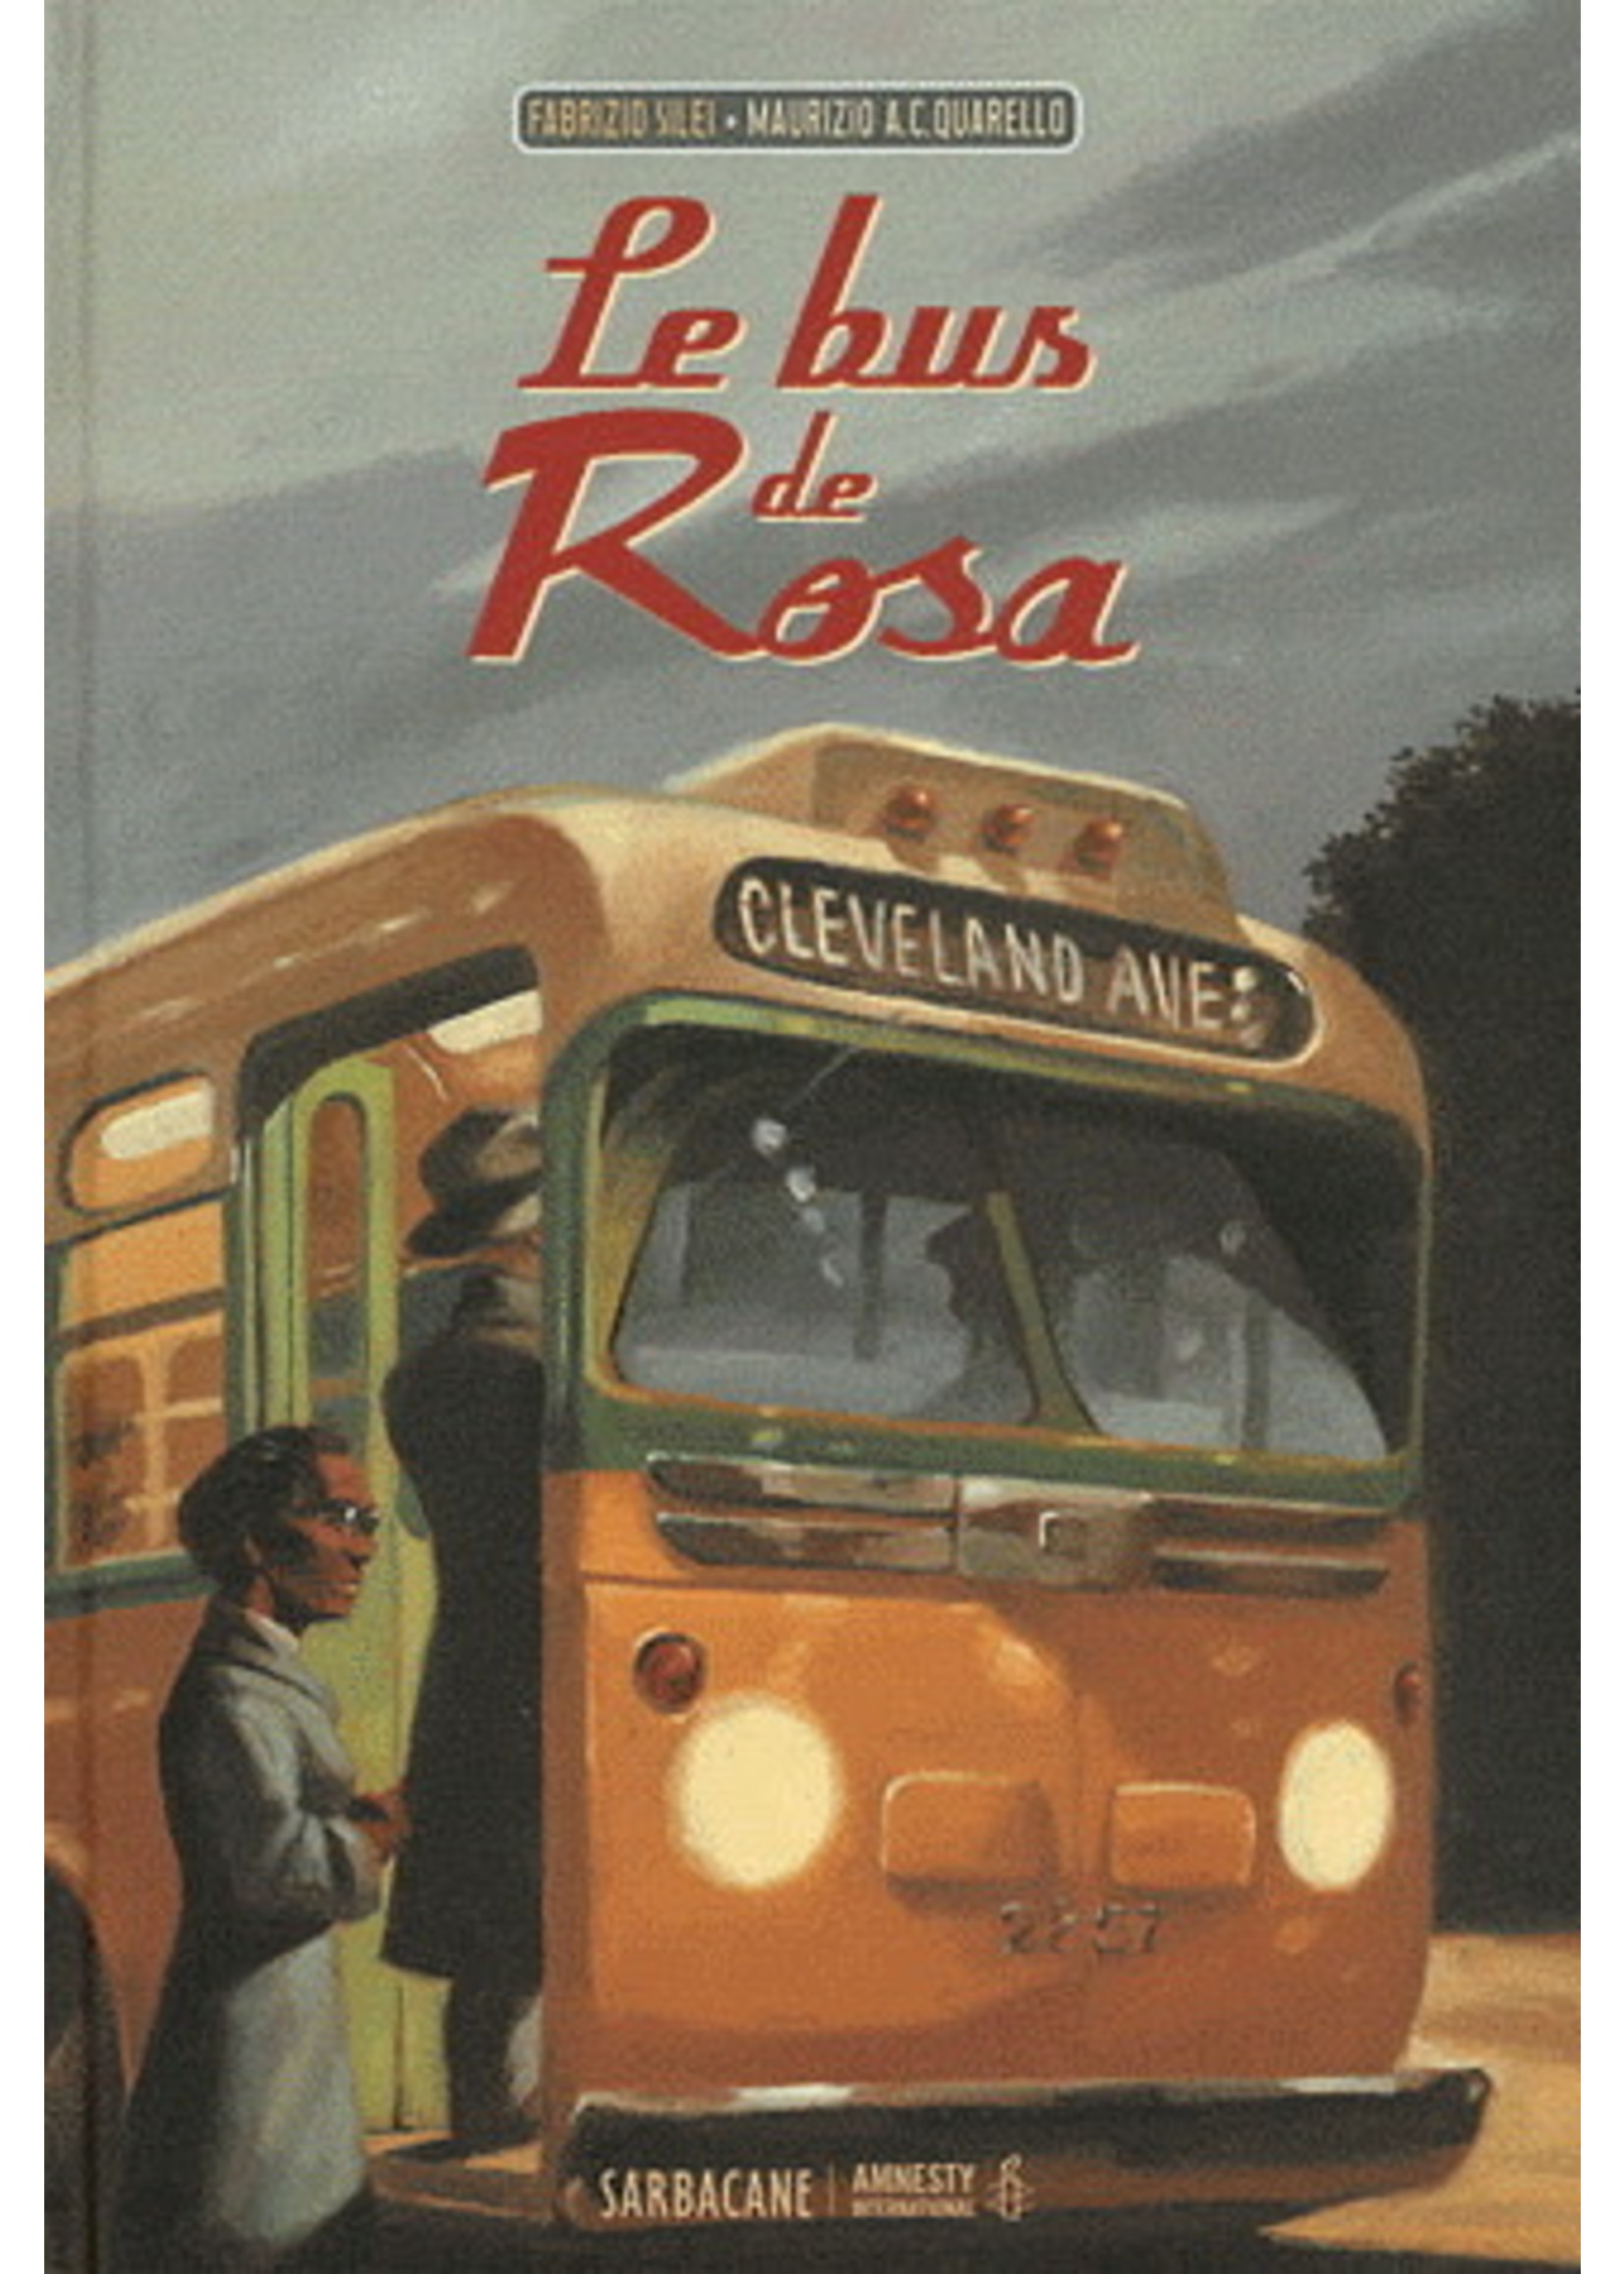 Le bus de Rosa by Fabrizio Silei, Maurizio A. C. Quarello